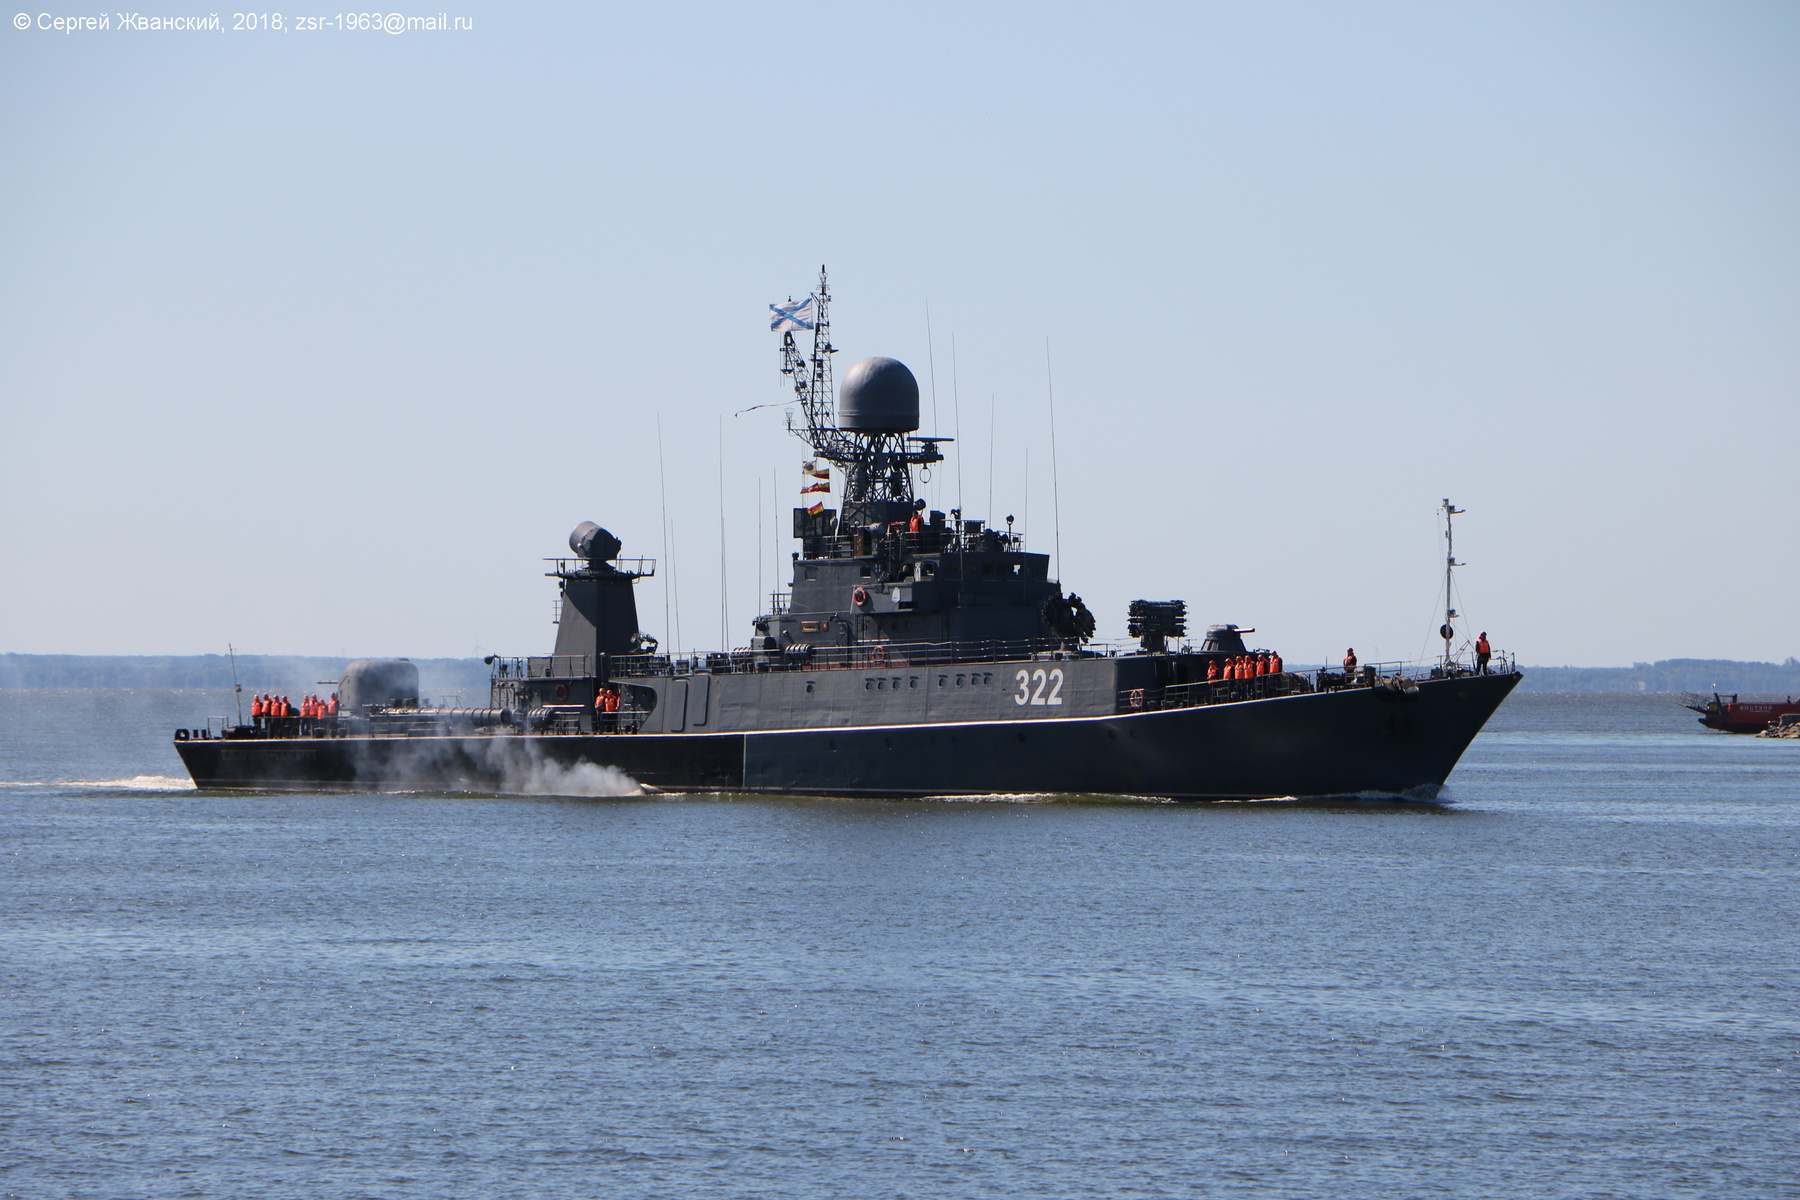 Малый противолодочный корабль "Кабардино-Балкария" выходит в море на учения. 7 июня 2018 г. 